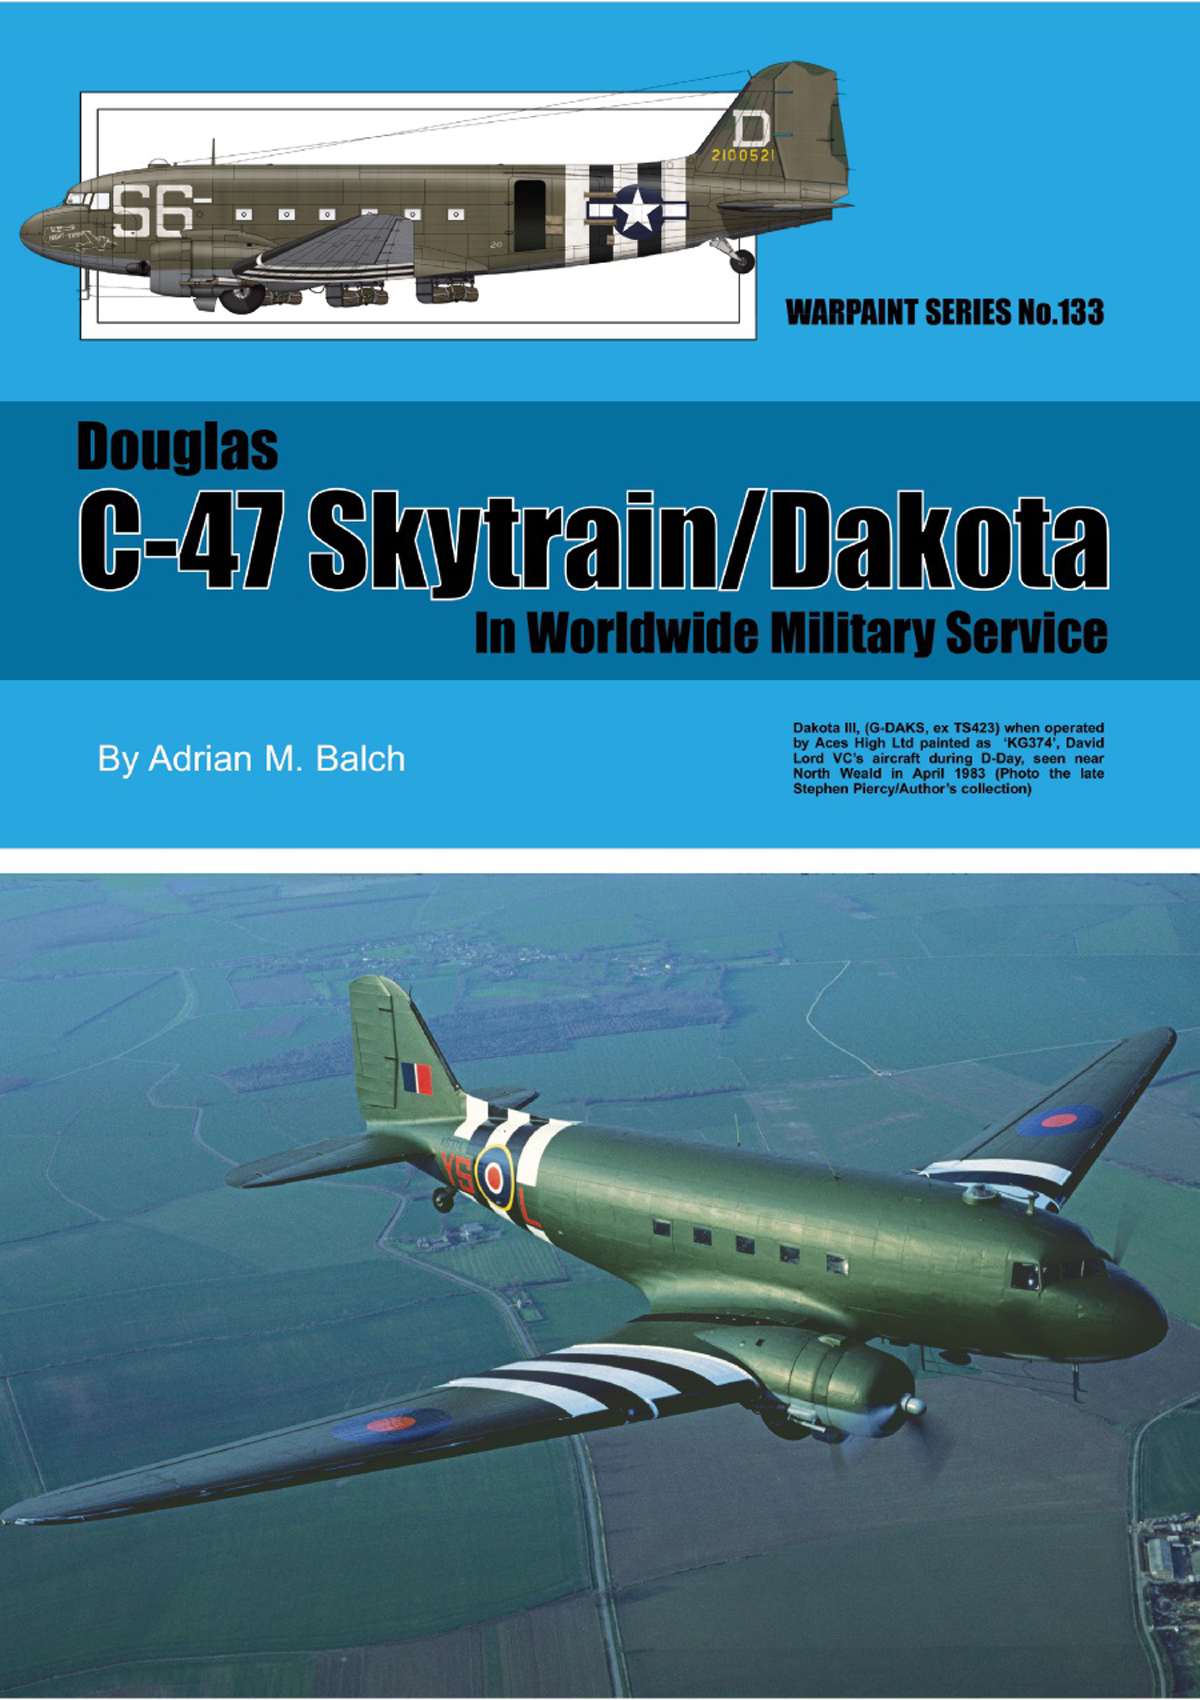 N133 - C-47 Skytrain/Dakota